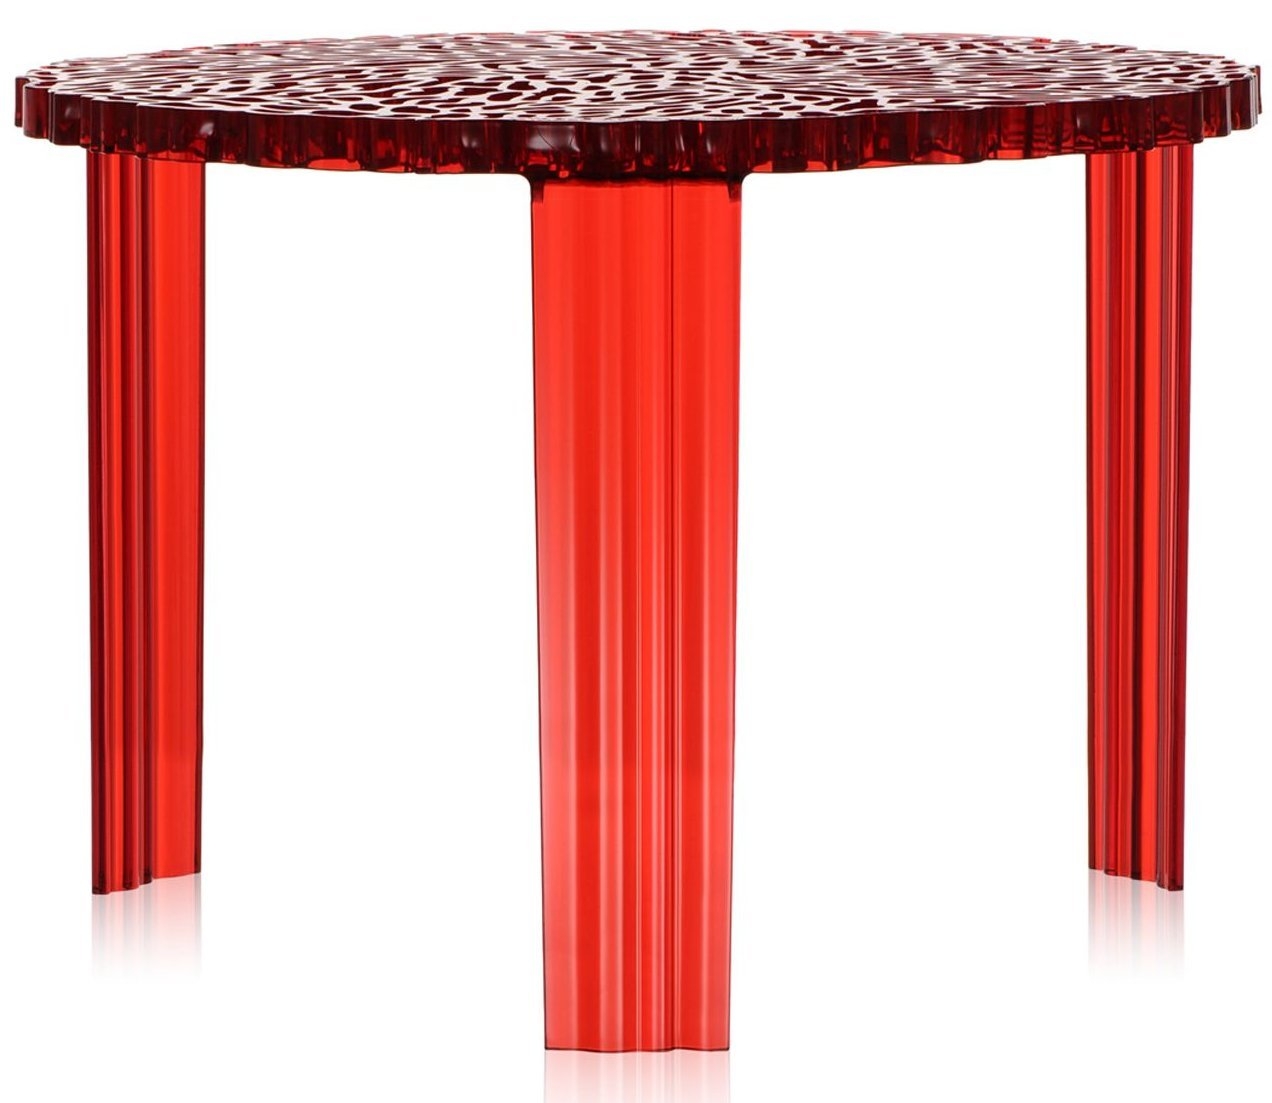 Masuta Kartell T-Table design Patricia Urquiola 50cm h 36cm rosu transparent Living & Dining